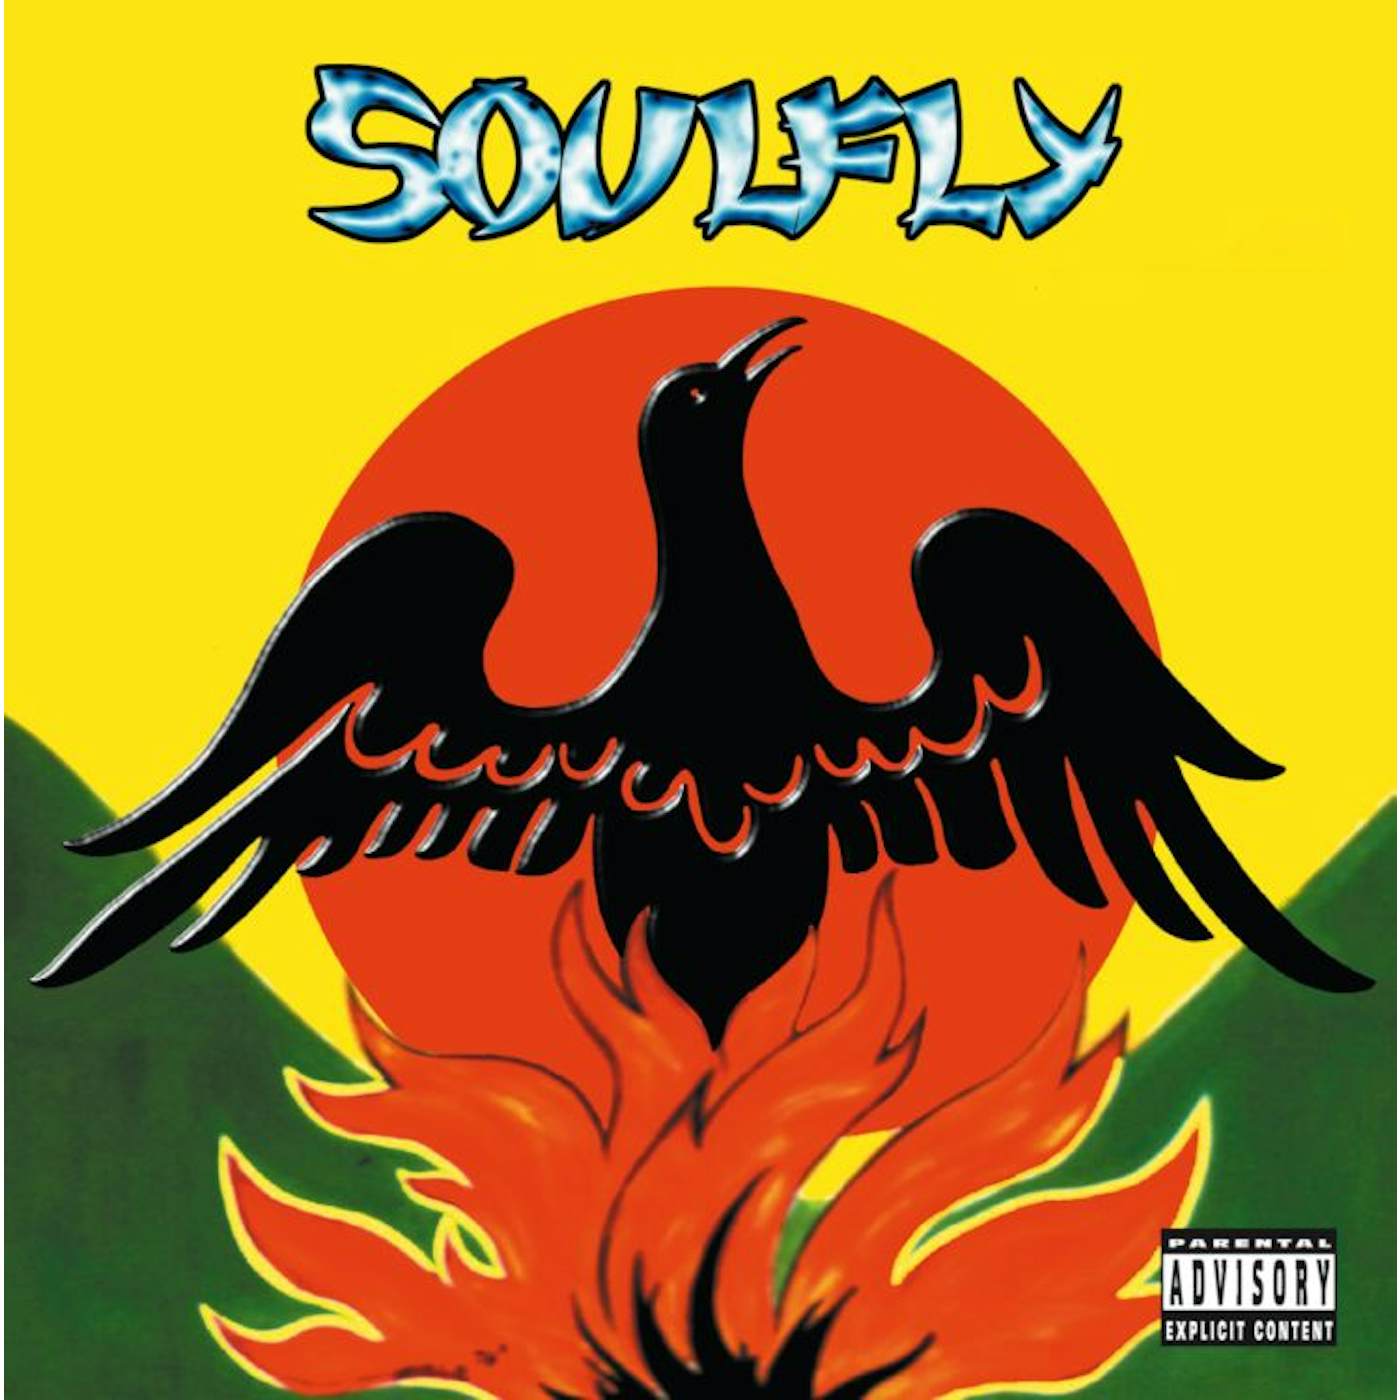 Soulfly Primitive CD